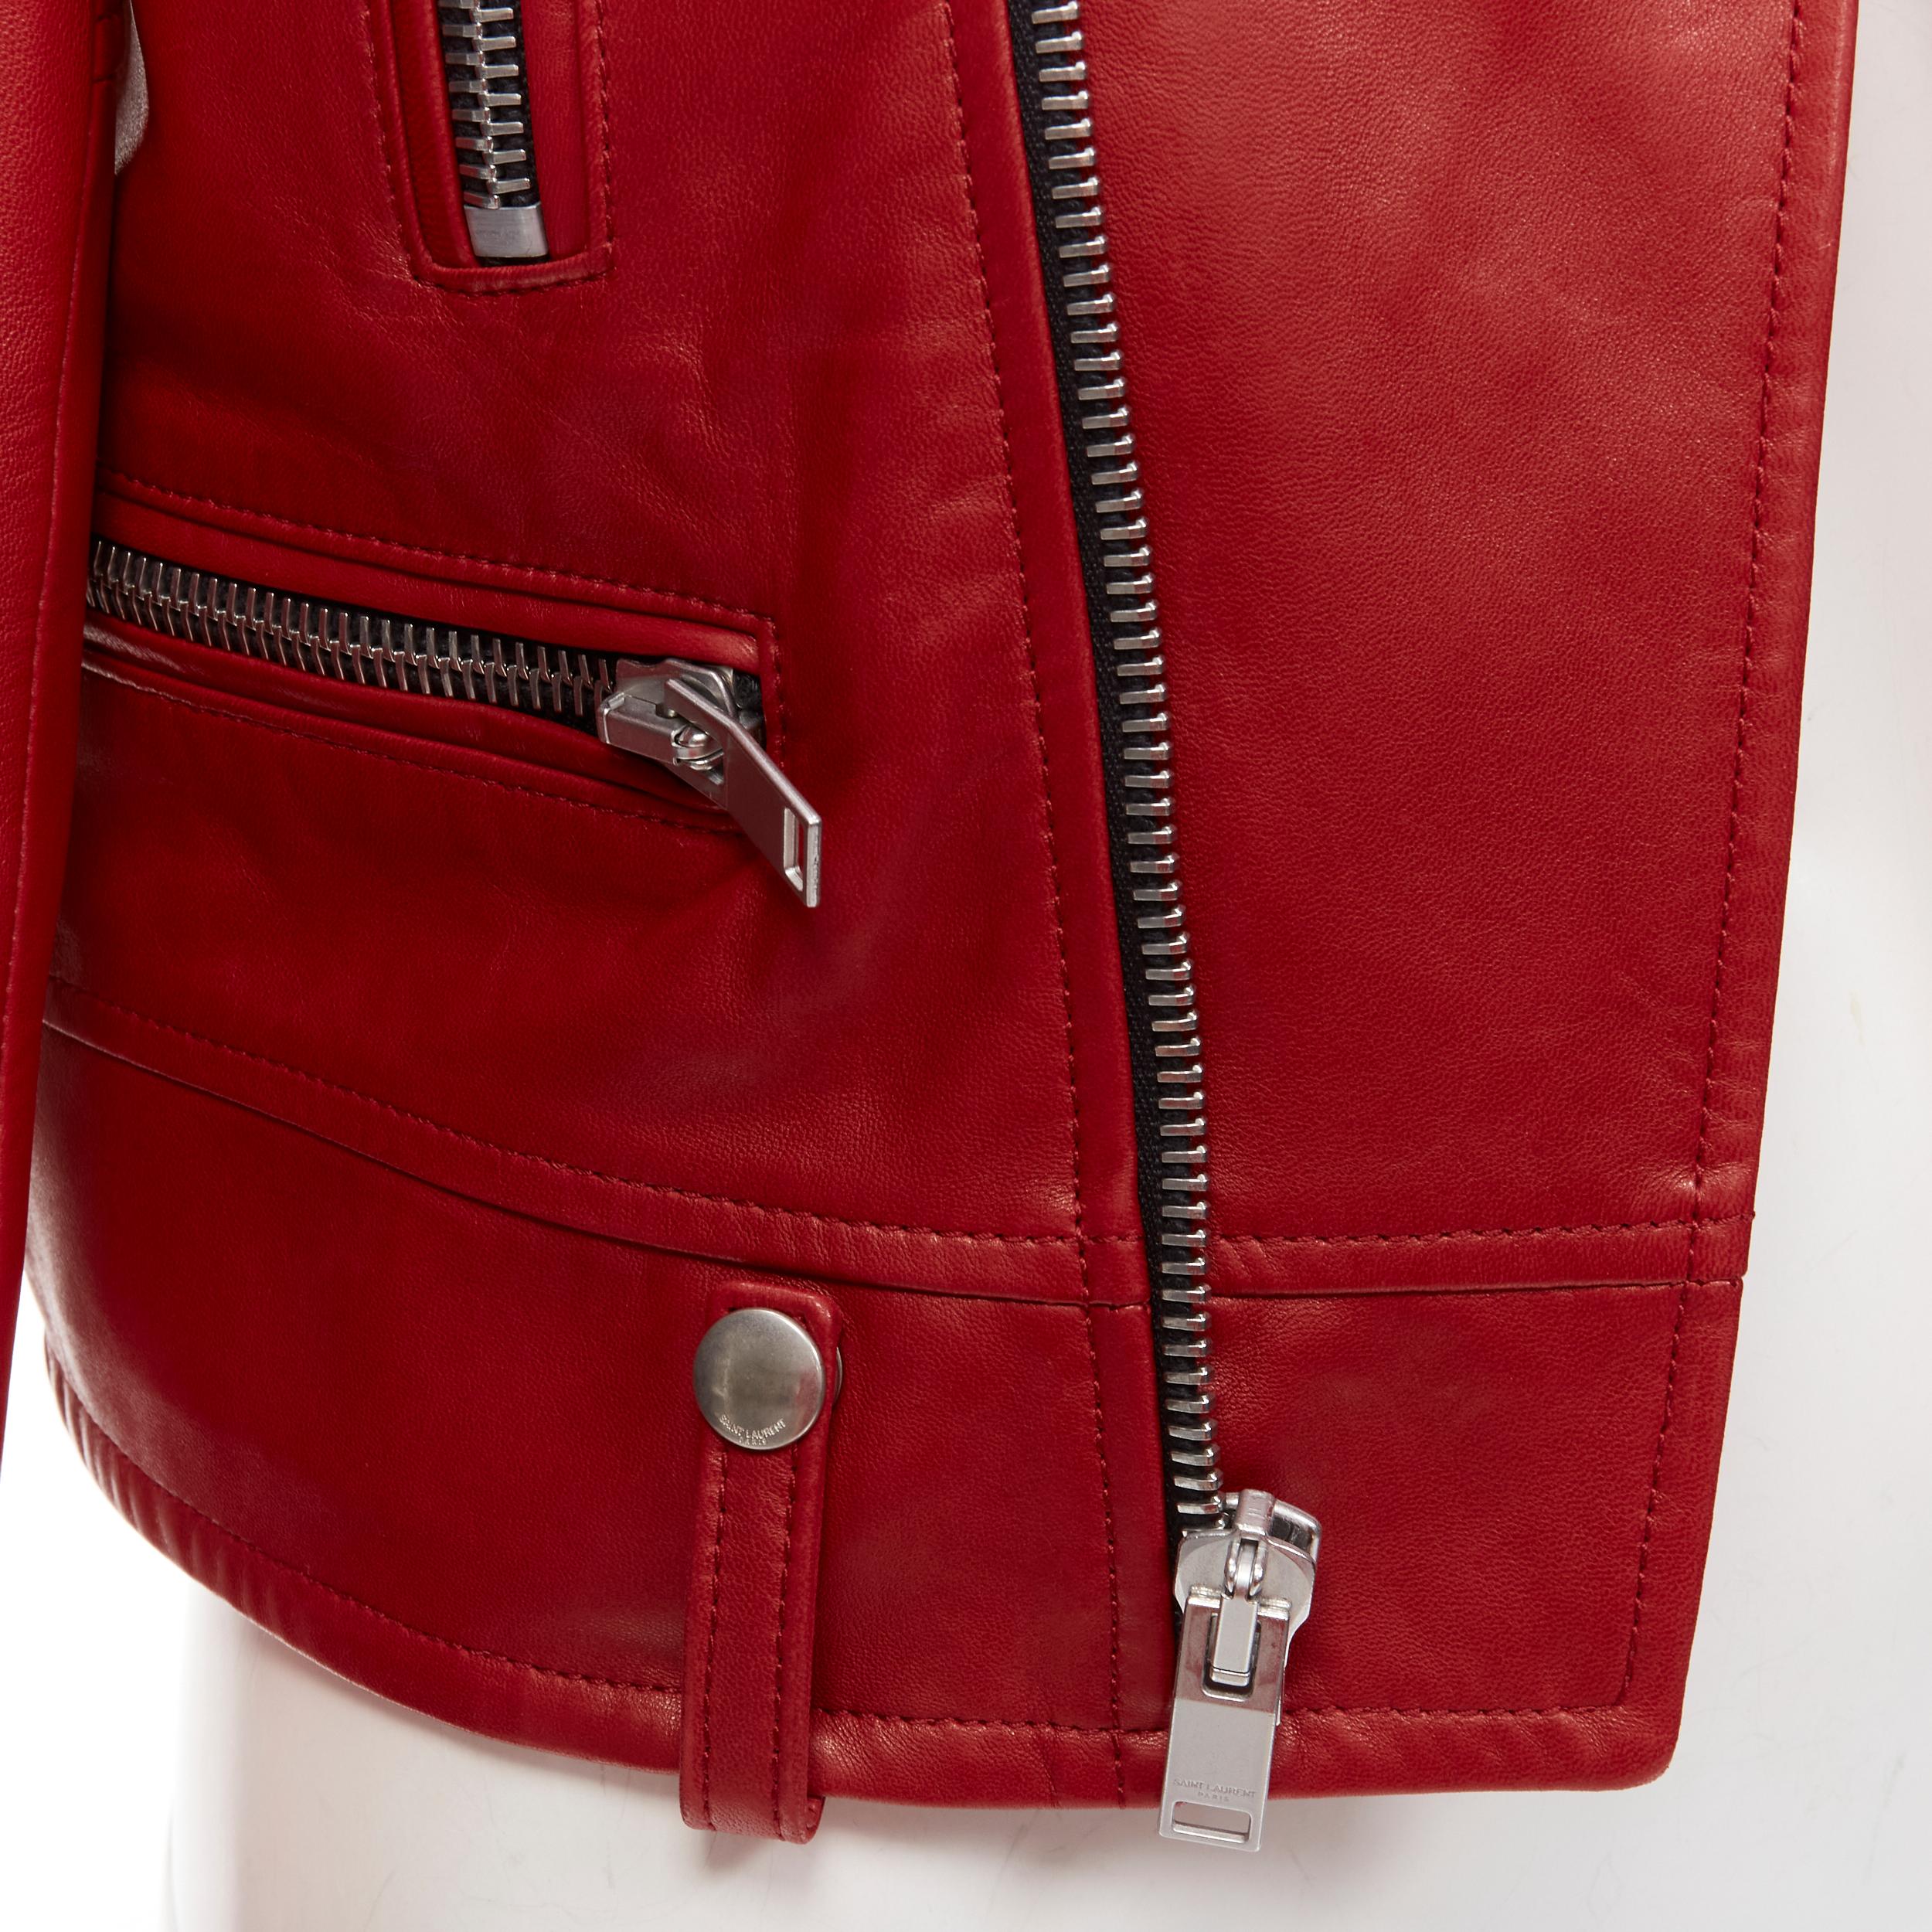 SAINT LAURENT 2013 Hedi Slimane red lambskin leather moto biker jacket FR38 S For Sale 1